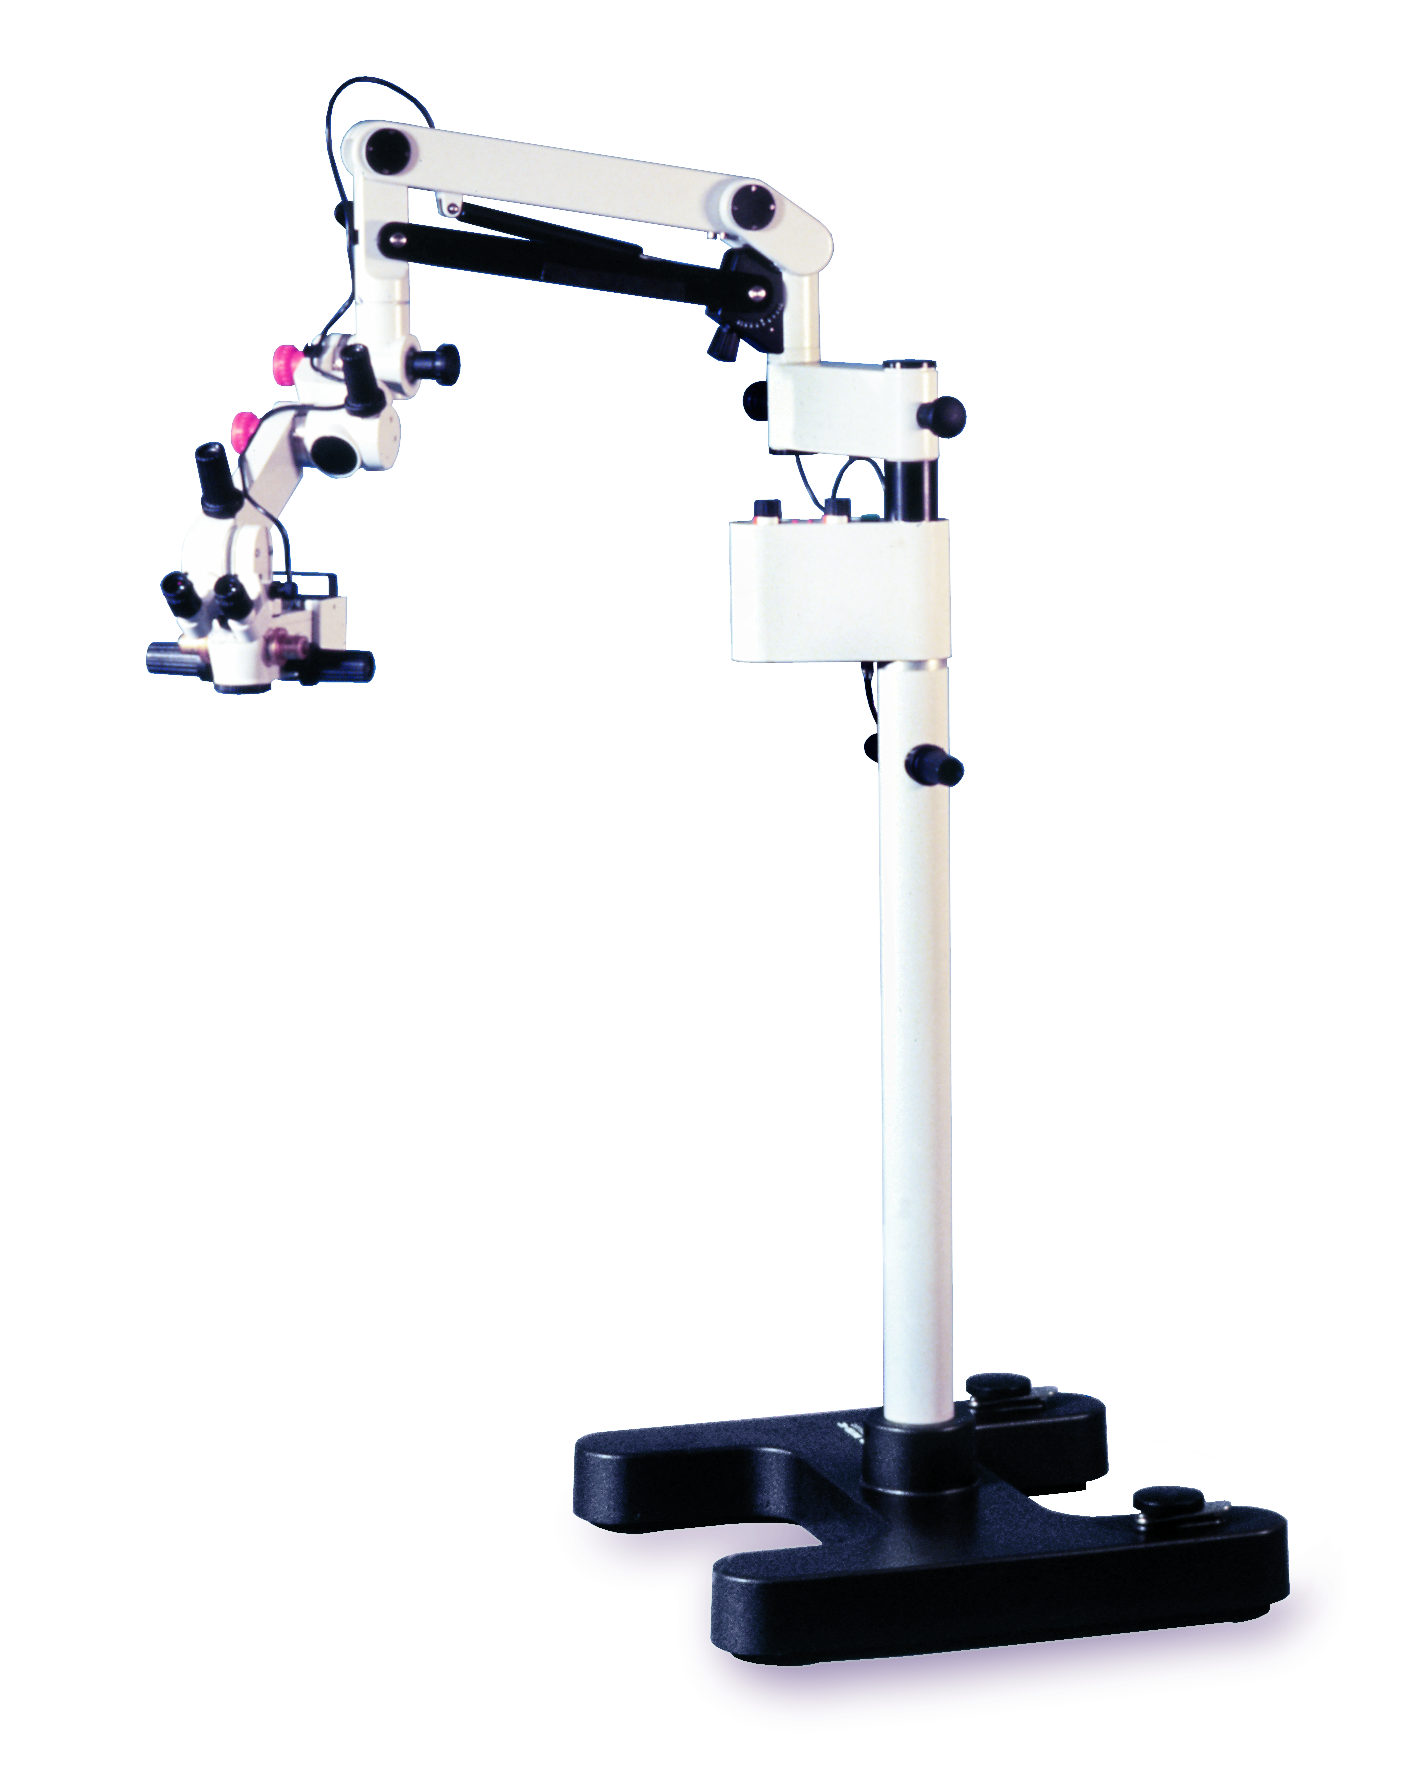 Das manuelle Operationsmikroskop Leica M651 für mikrochirurgische Eingriffe